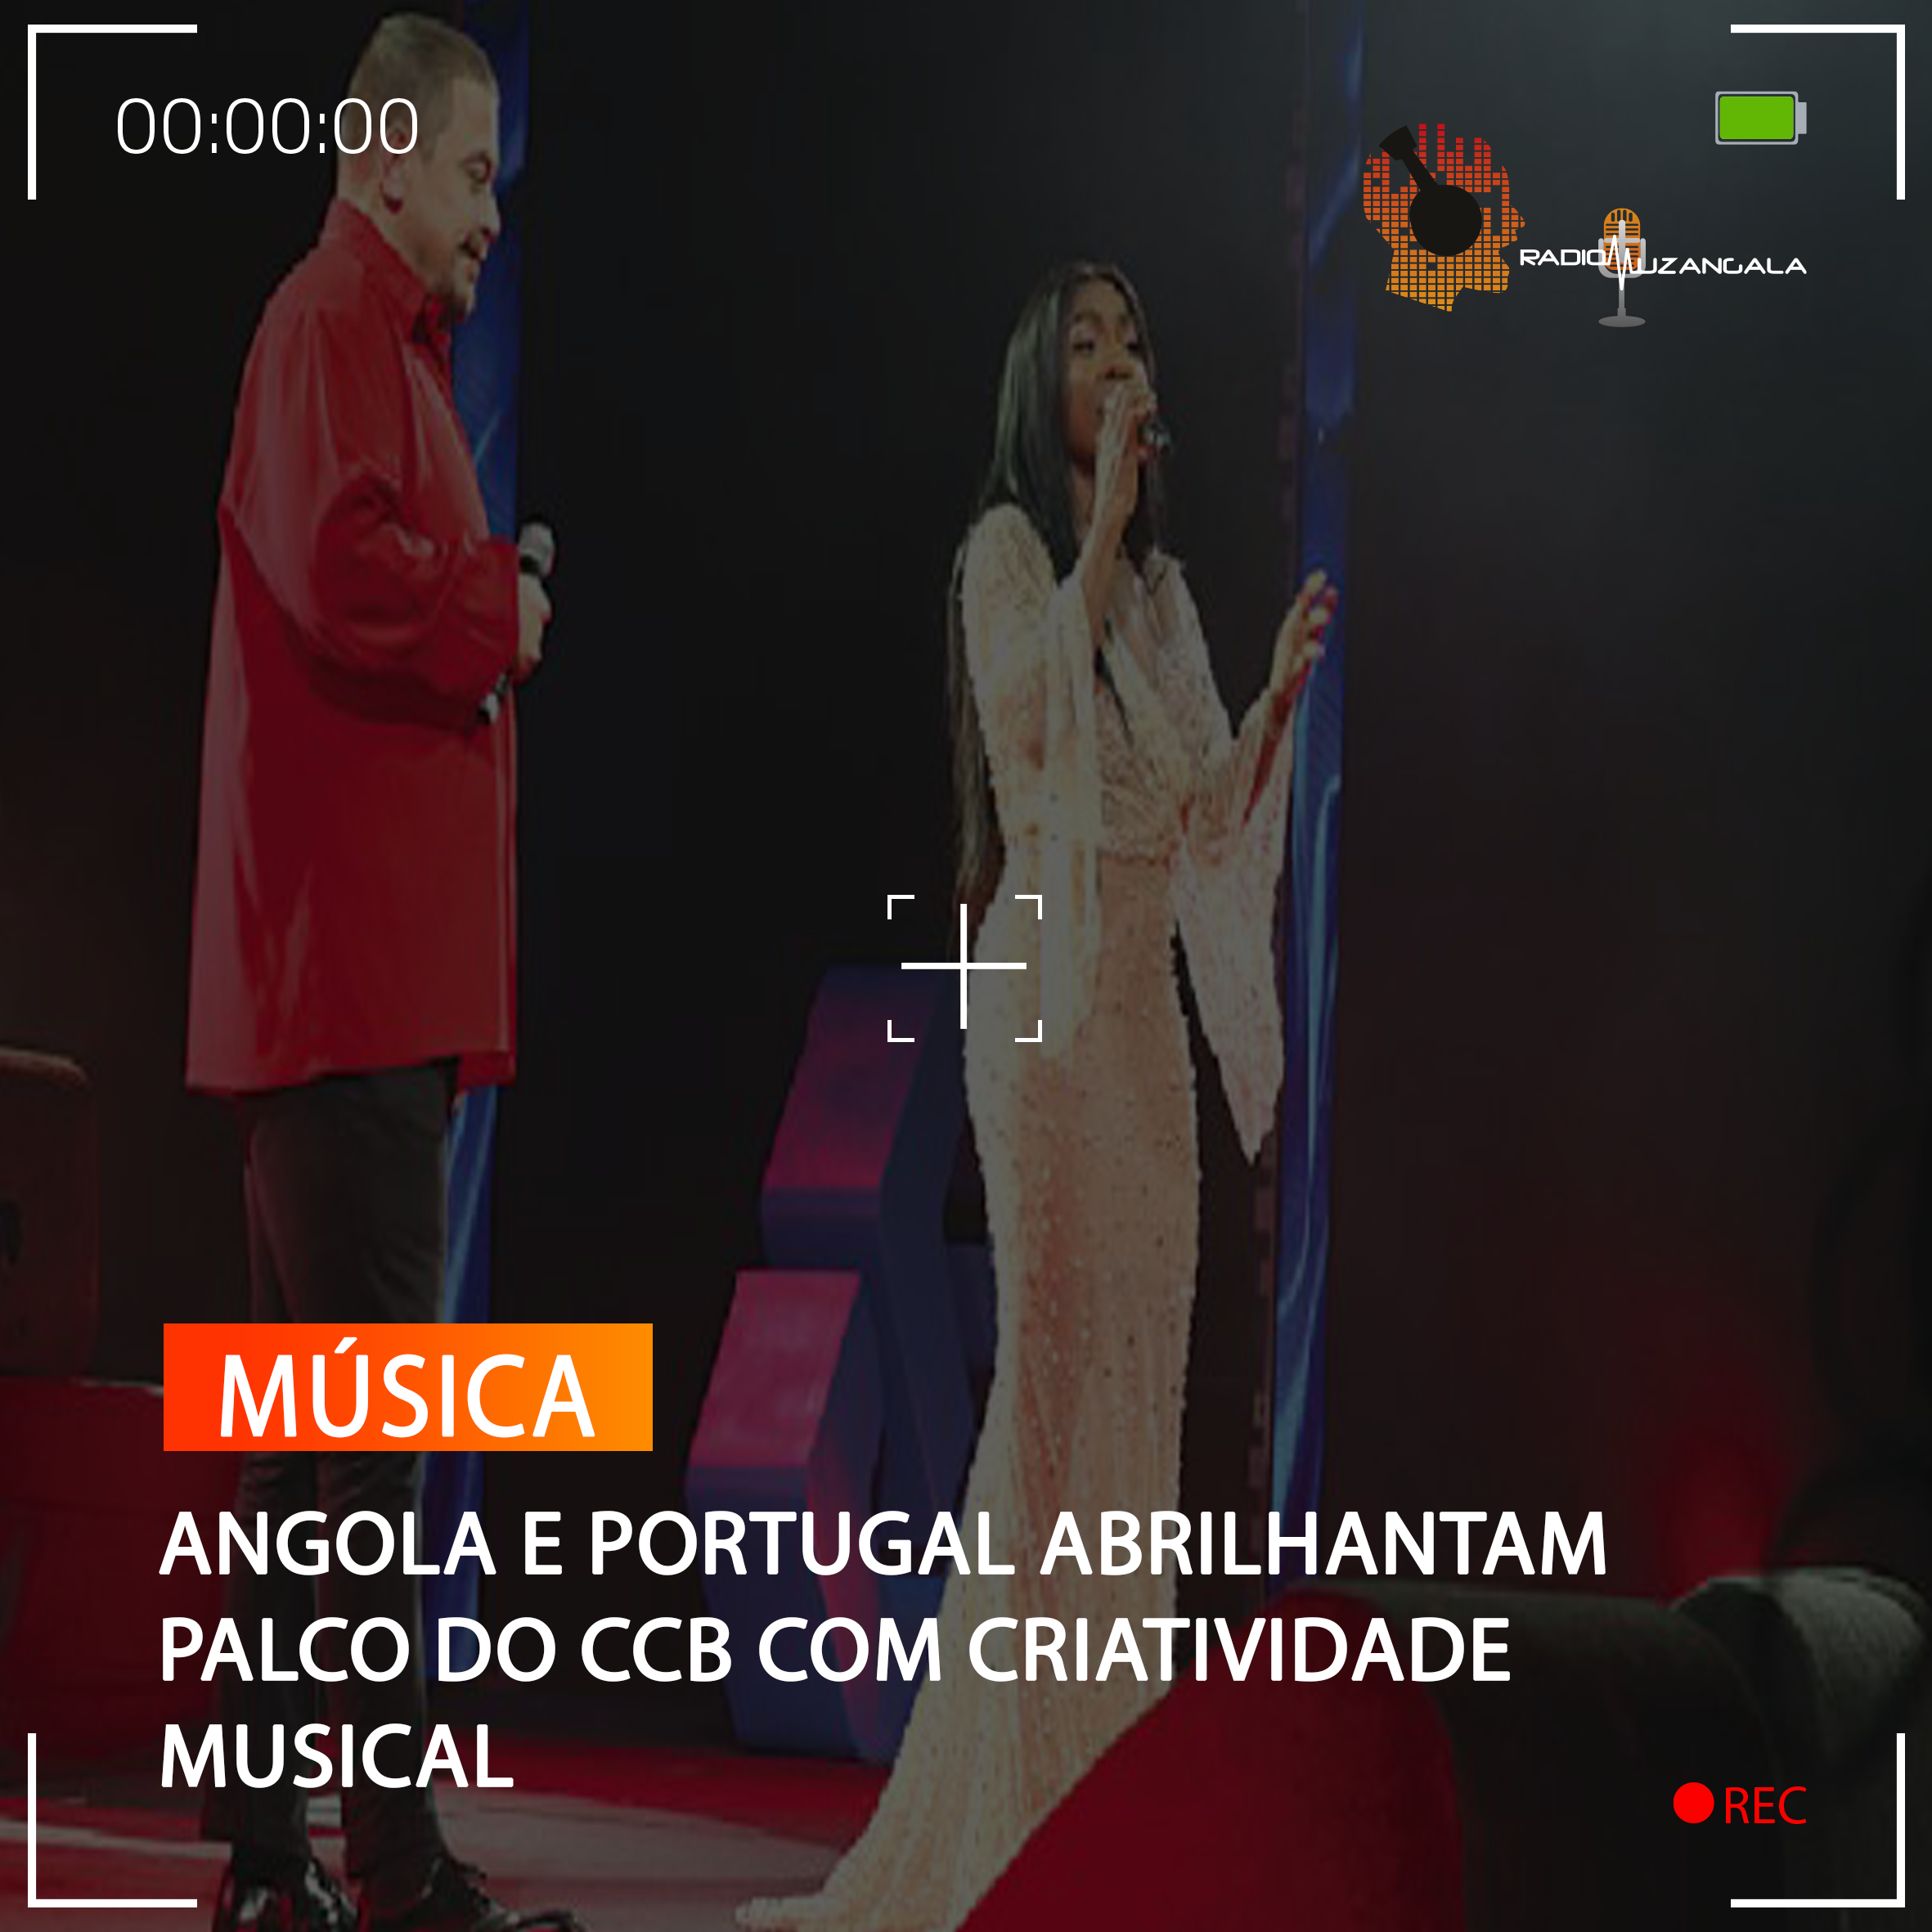  ANGOLA E PORTUGAL ABRILHANTAM PALCO DO CCB COM CRIATIVIDADE MUSICAL